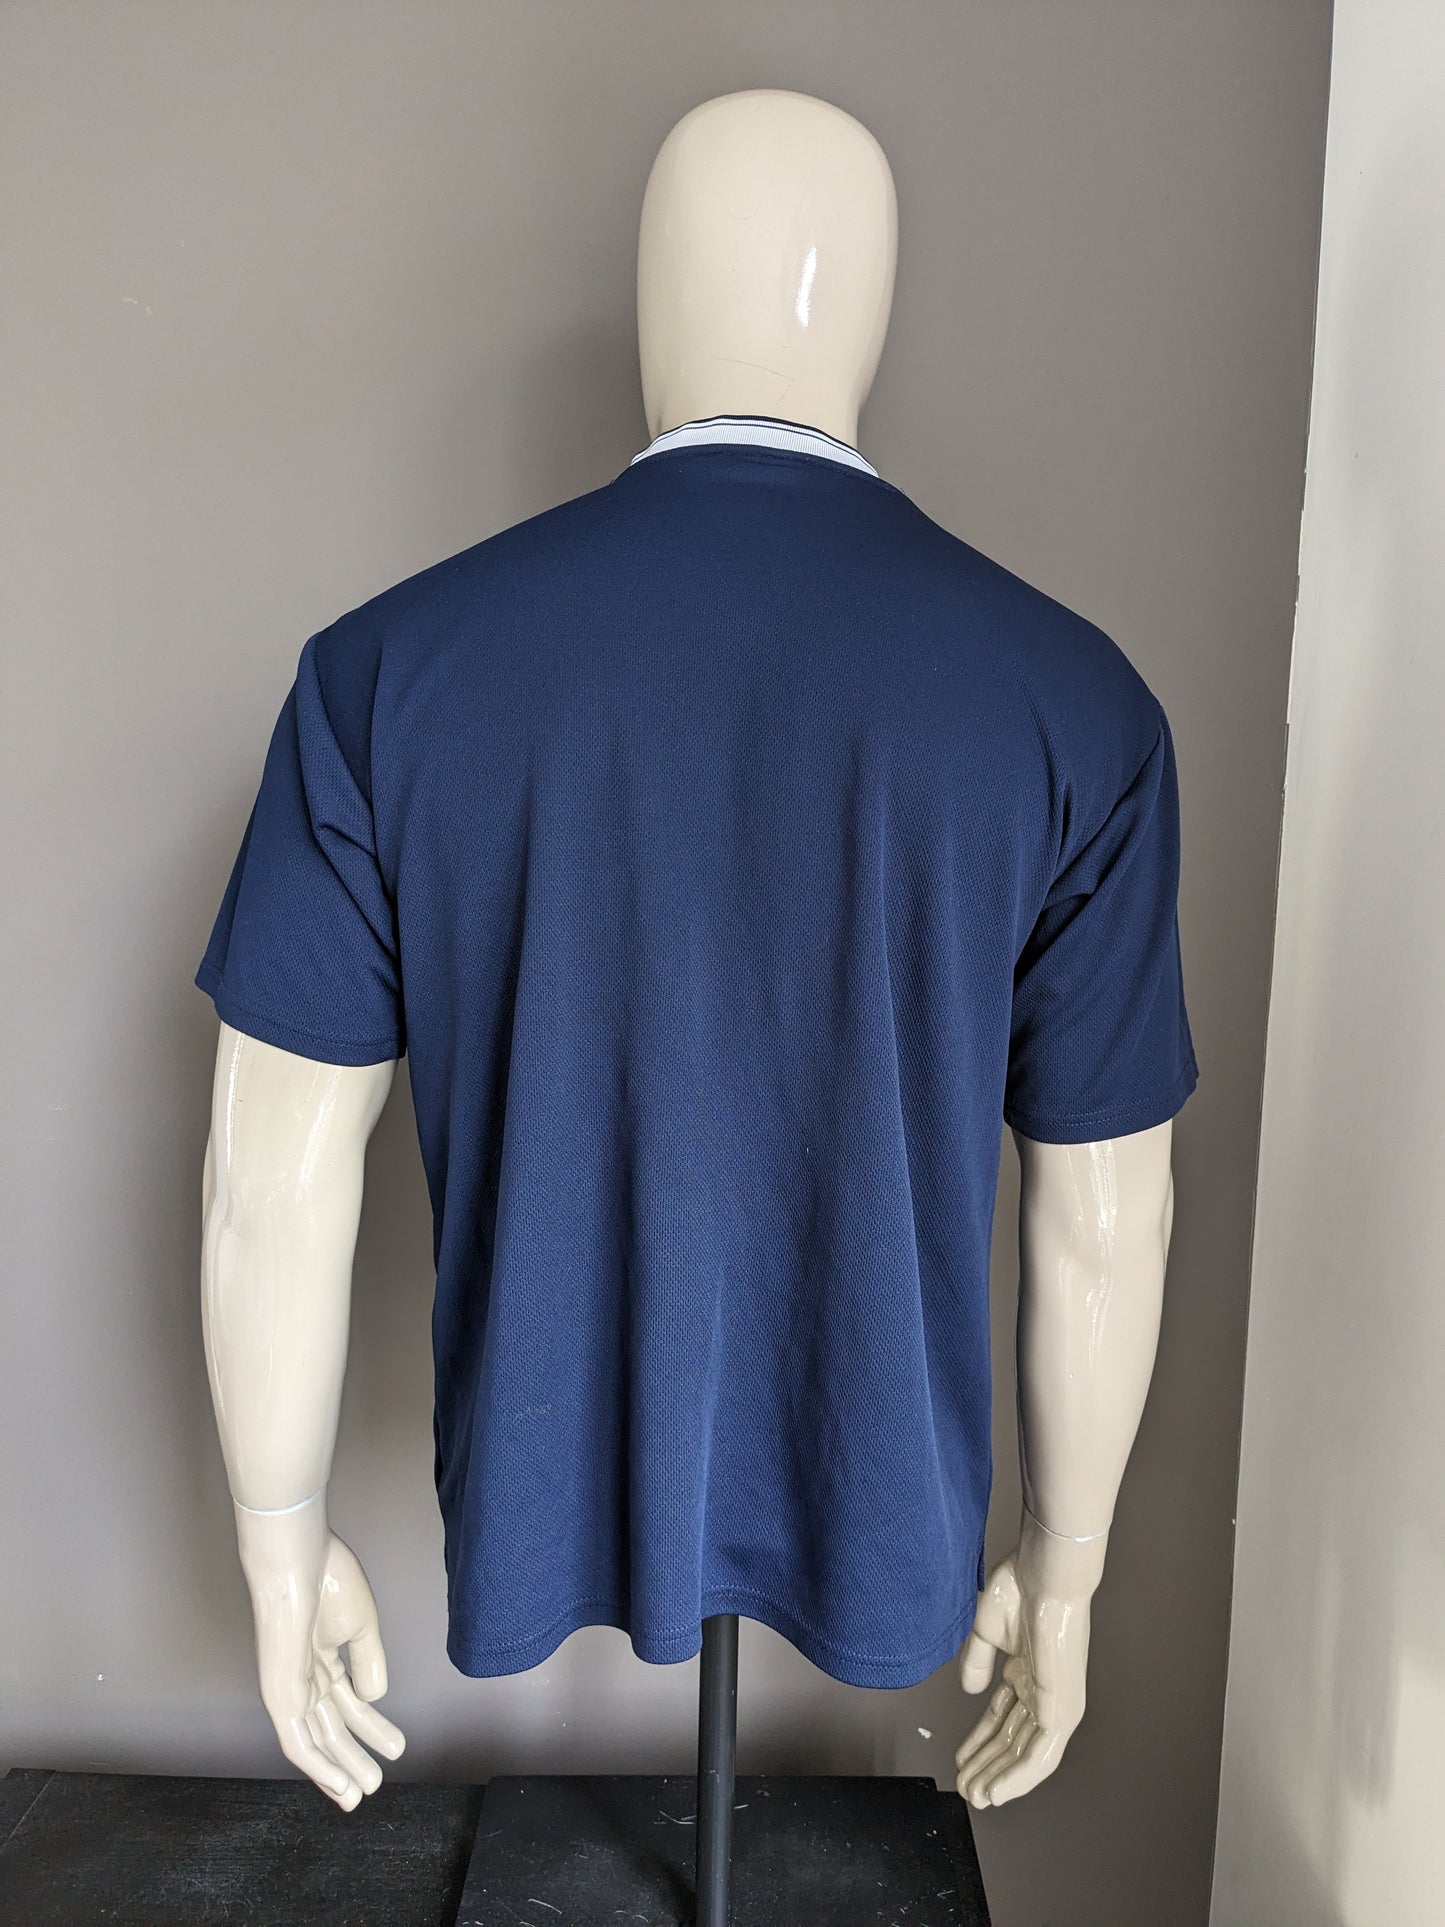 Chemise fila vintage avec col en V. Couleur bleu foncé. Taille L.